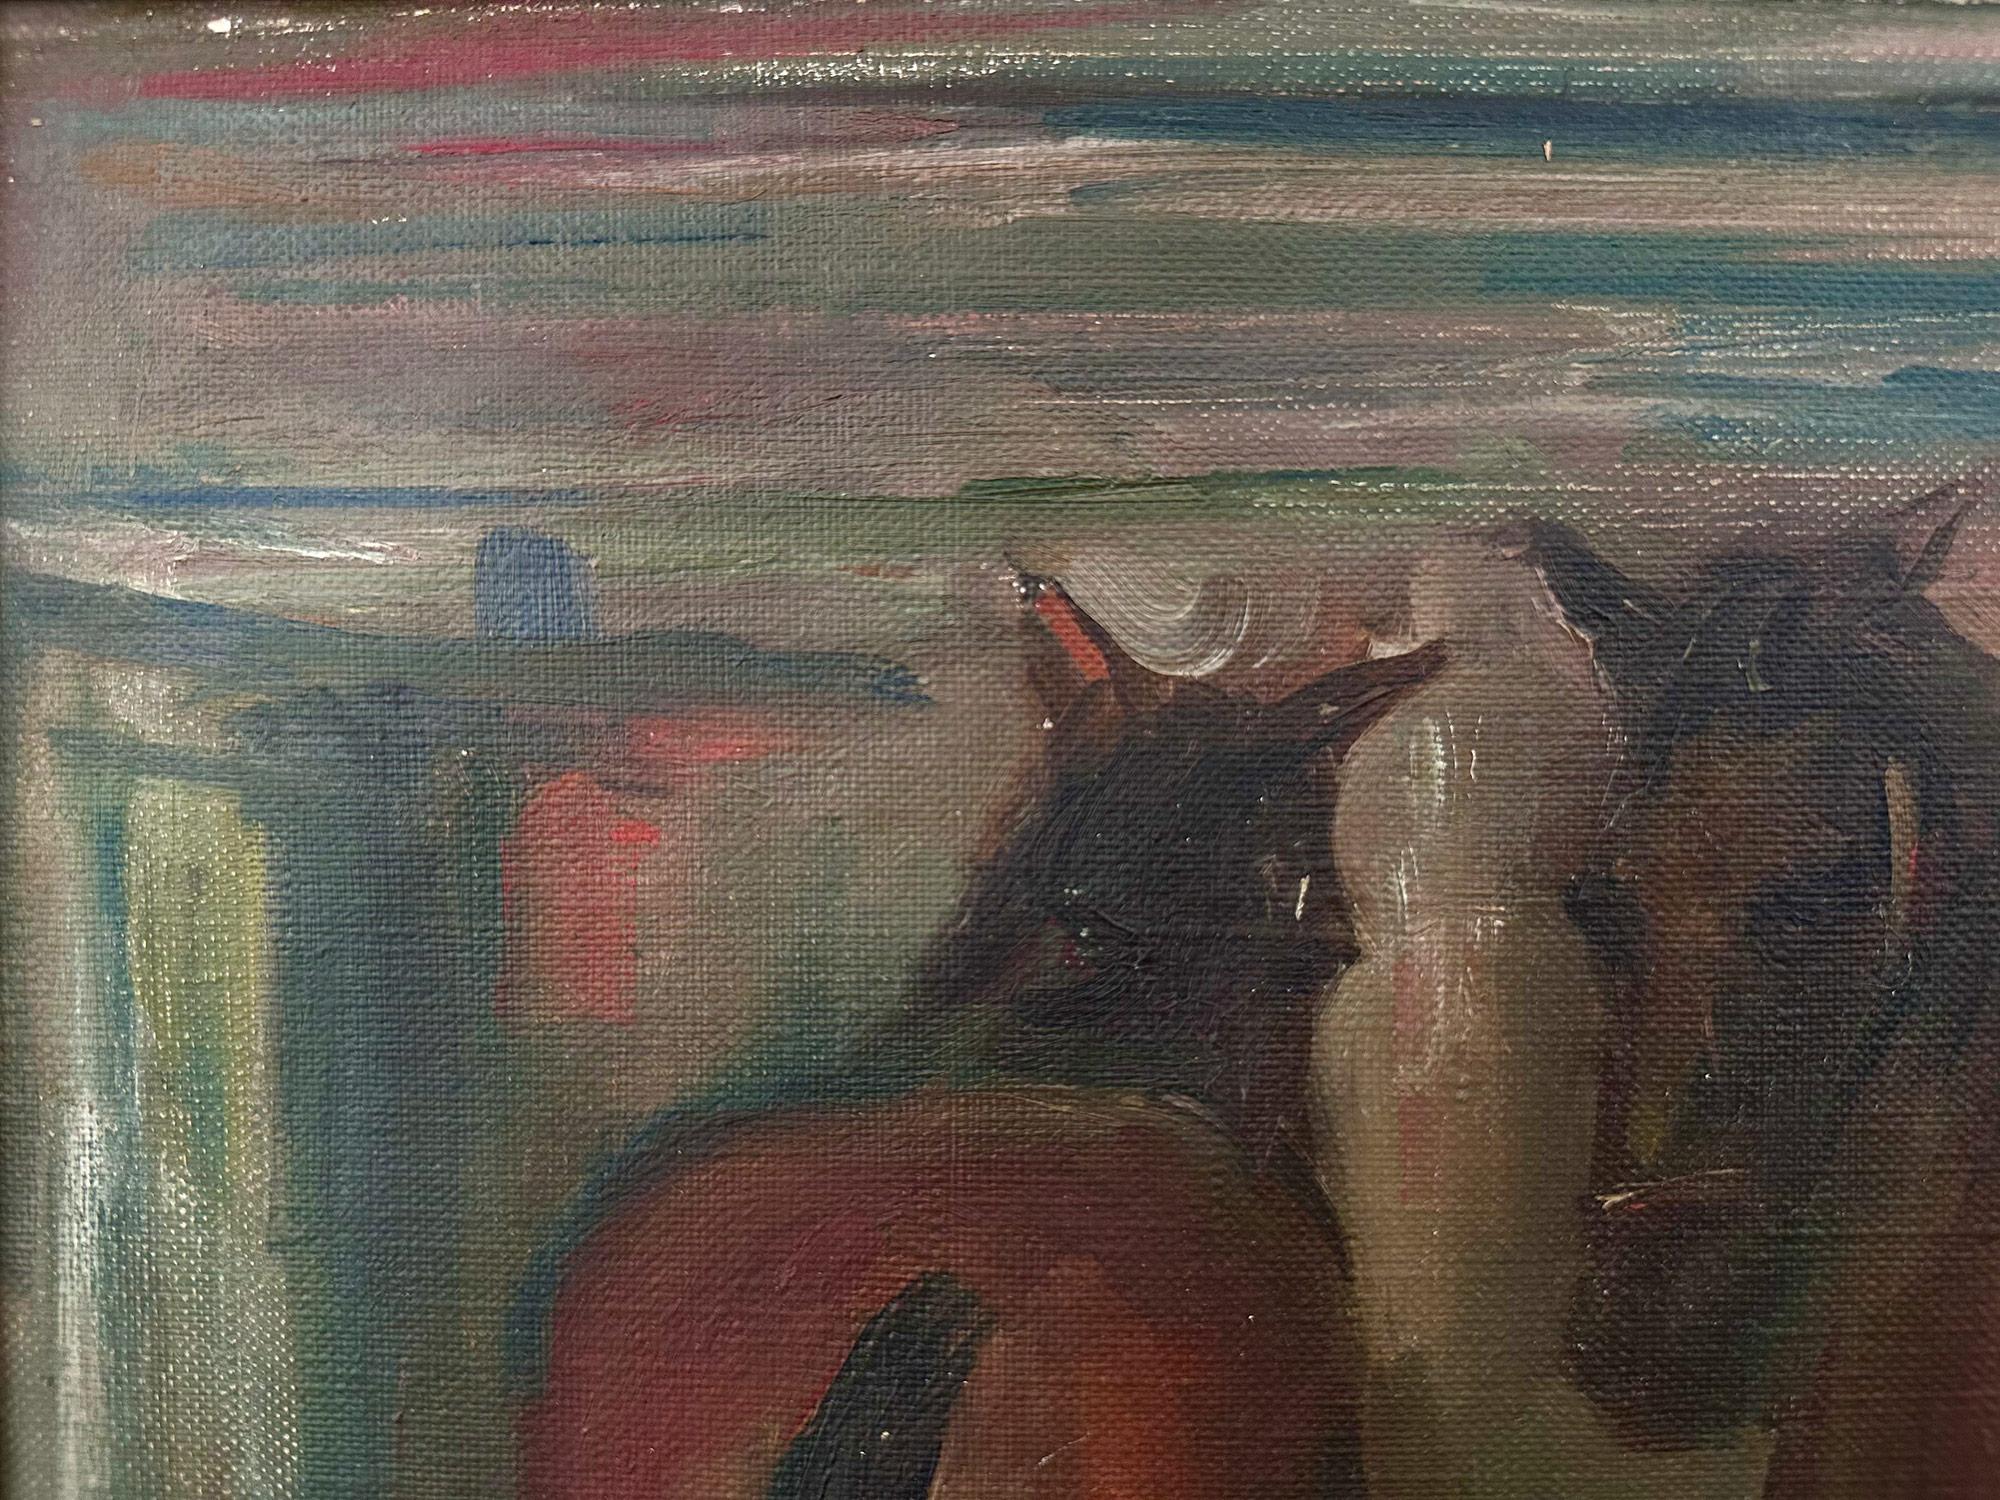 Ein charmantes Ölgemälde, das zwei braune Pferde in einem Stall zeigt, mit Details der Holzstruktur und dem Heu auf dem Boden. In einer sehr impressionistischen Weise mit einzigartigen Farben und Ausdrücken mit der Verwendung von hellen Farben und